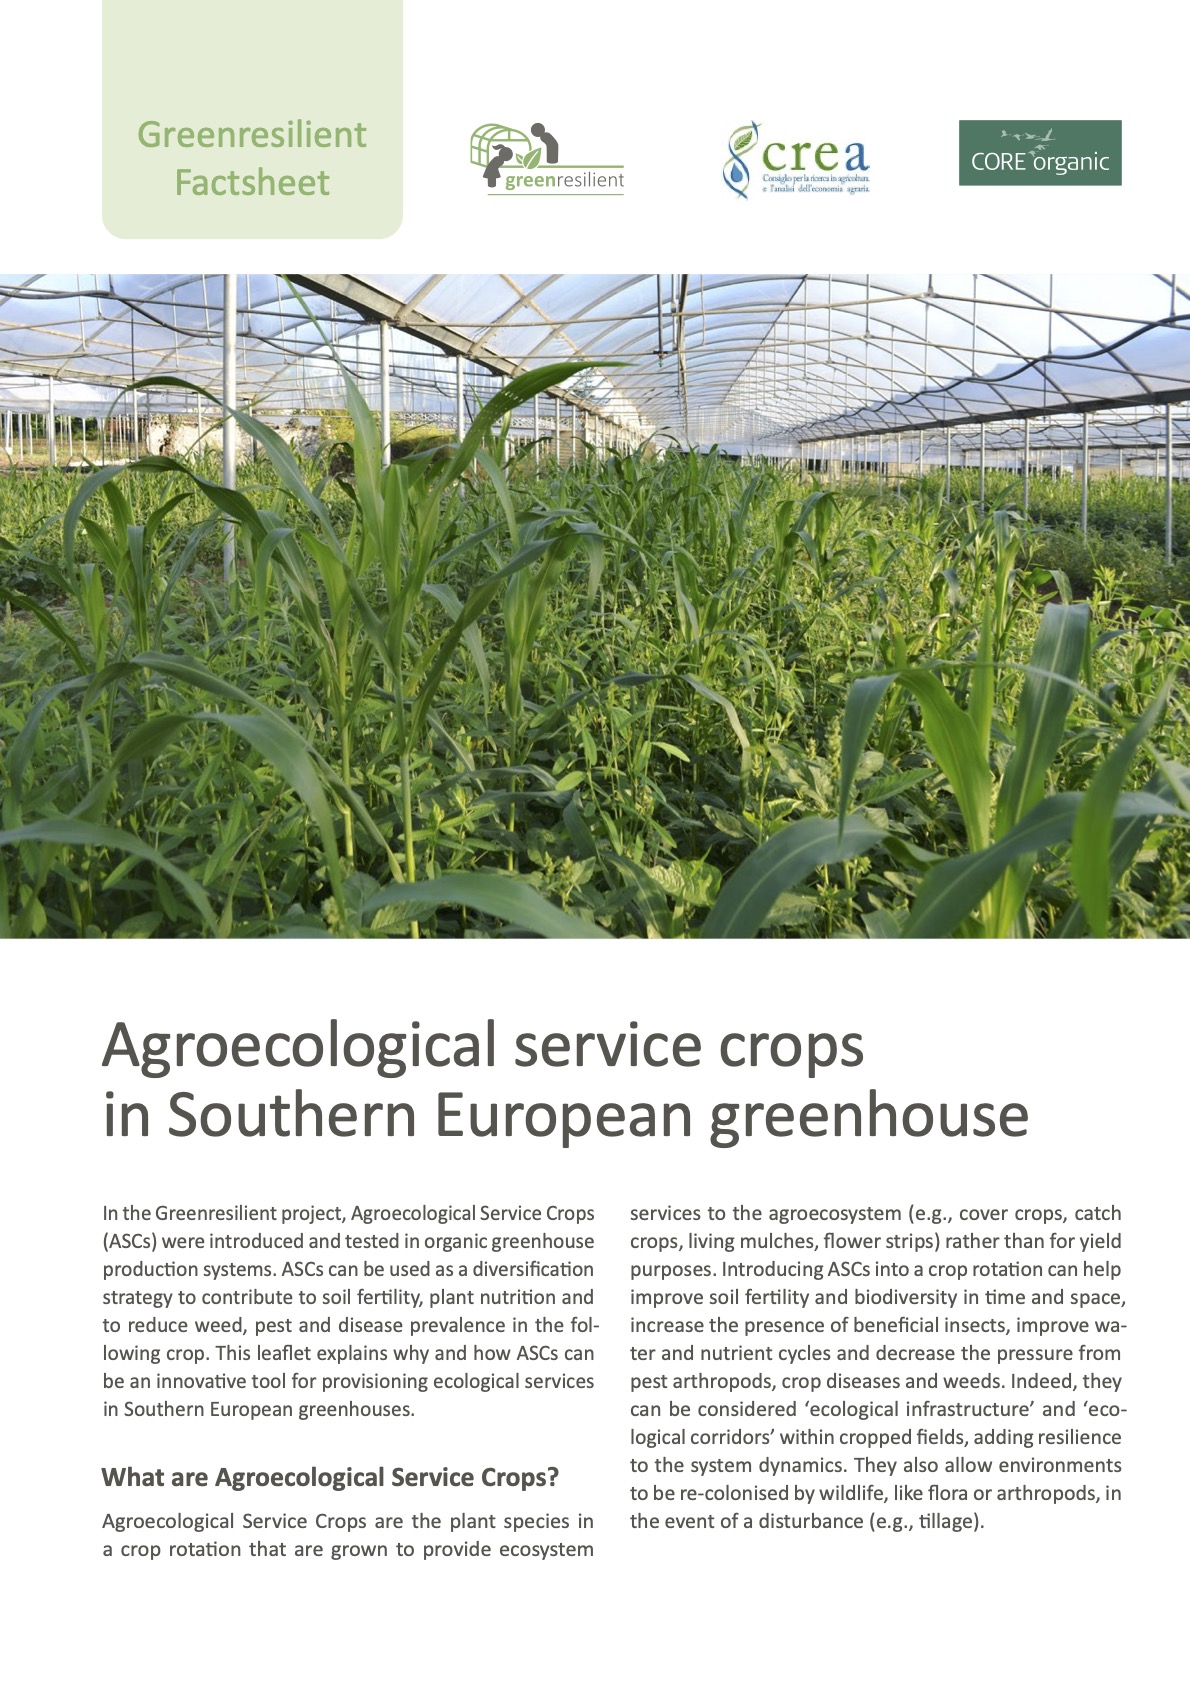 Καλλιέργειες αγροοικολογικής υπηρεσίας σε θερμοκήπιο της Νότιας Ευρώπης (Greenresilient Factsheet)